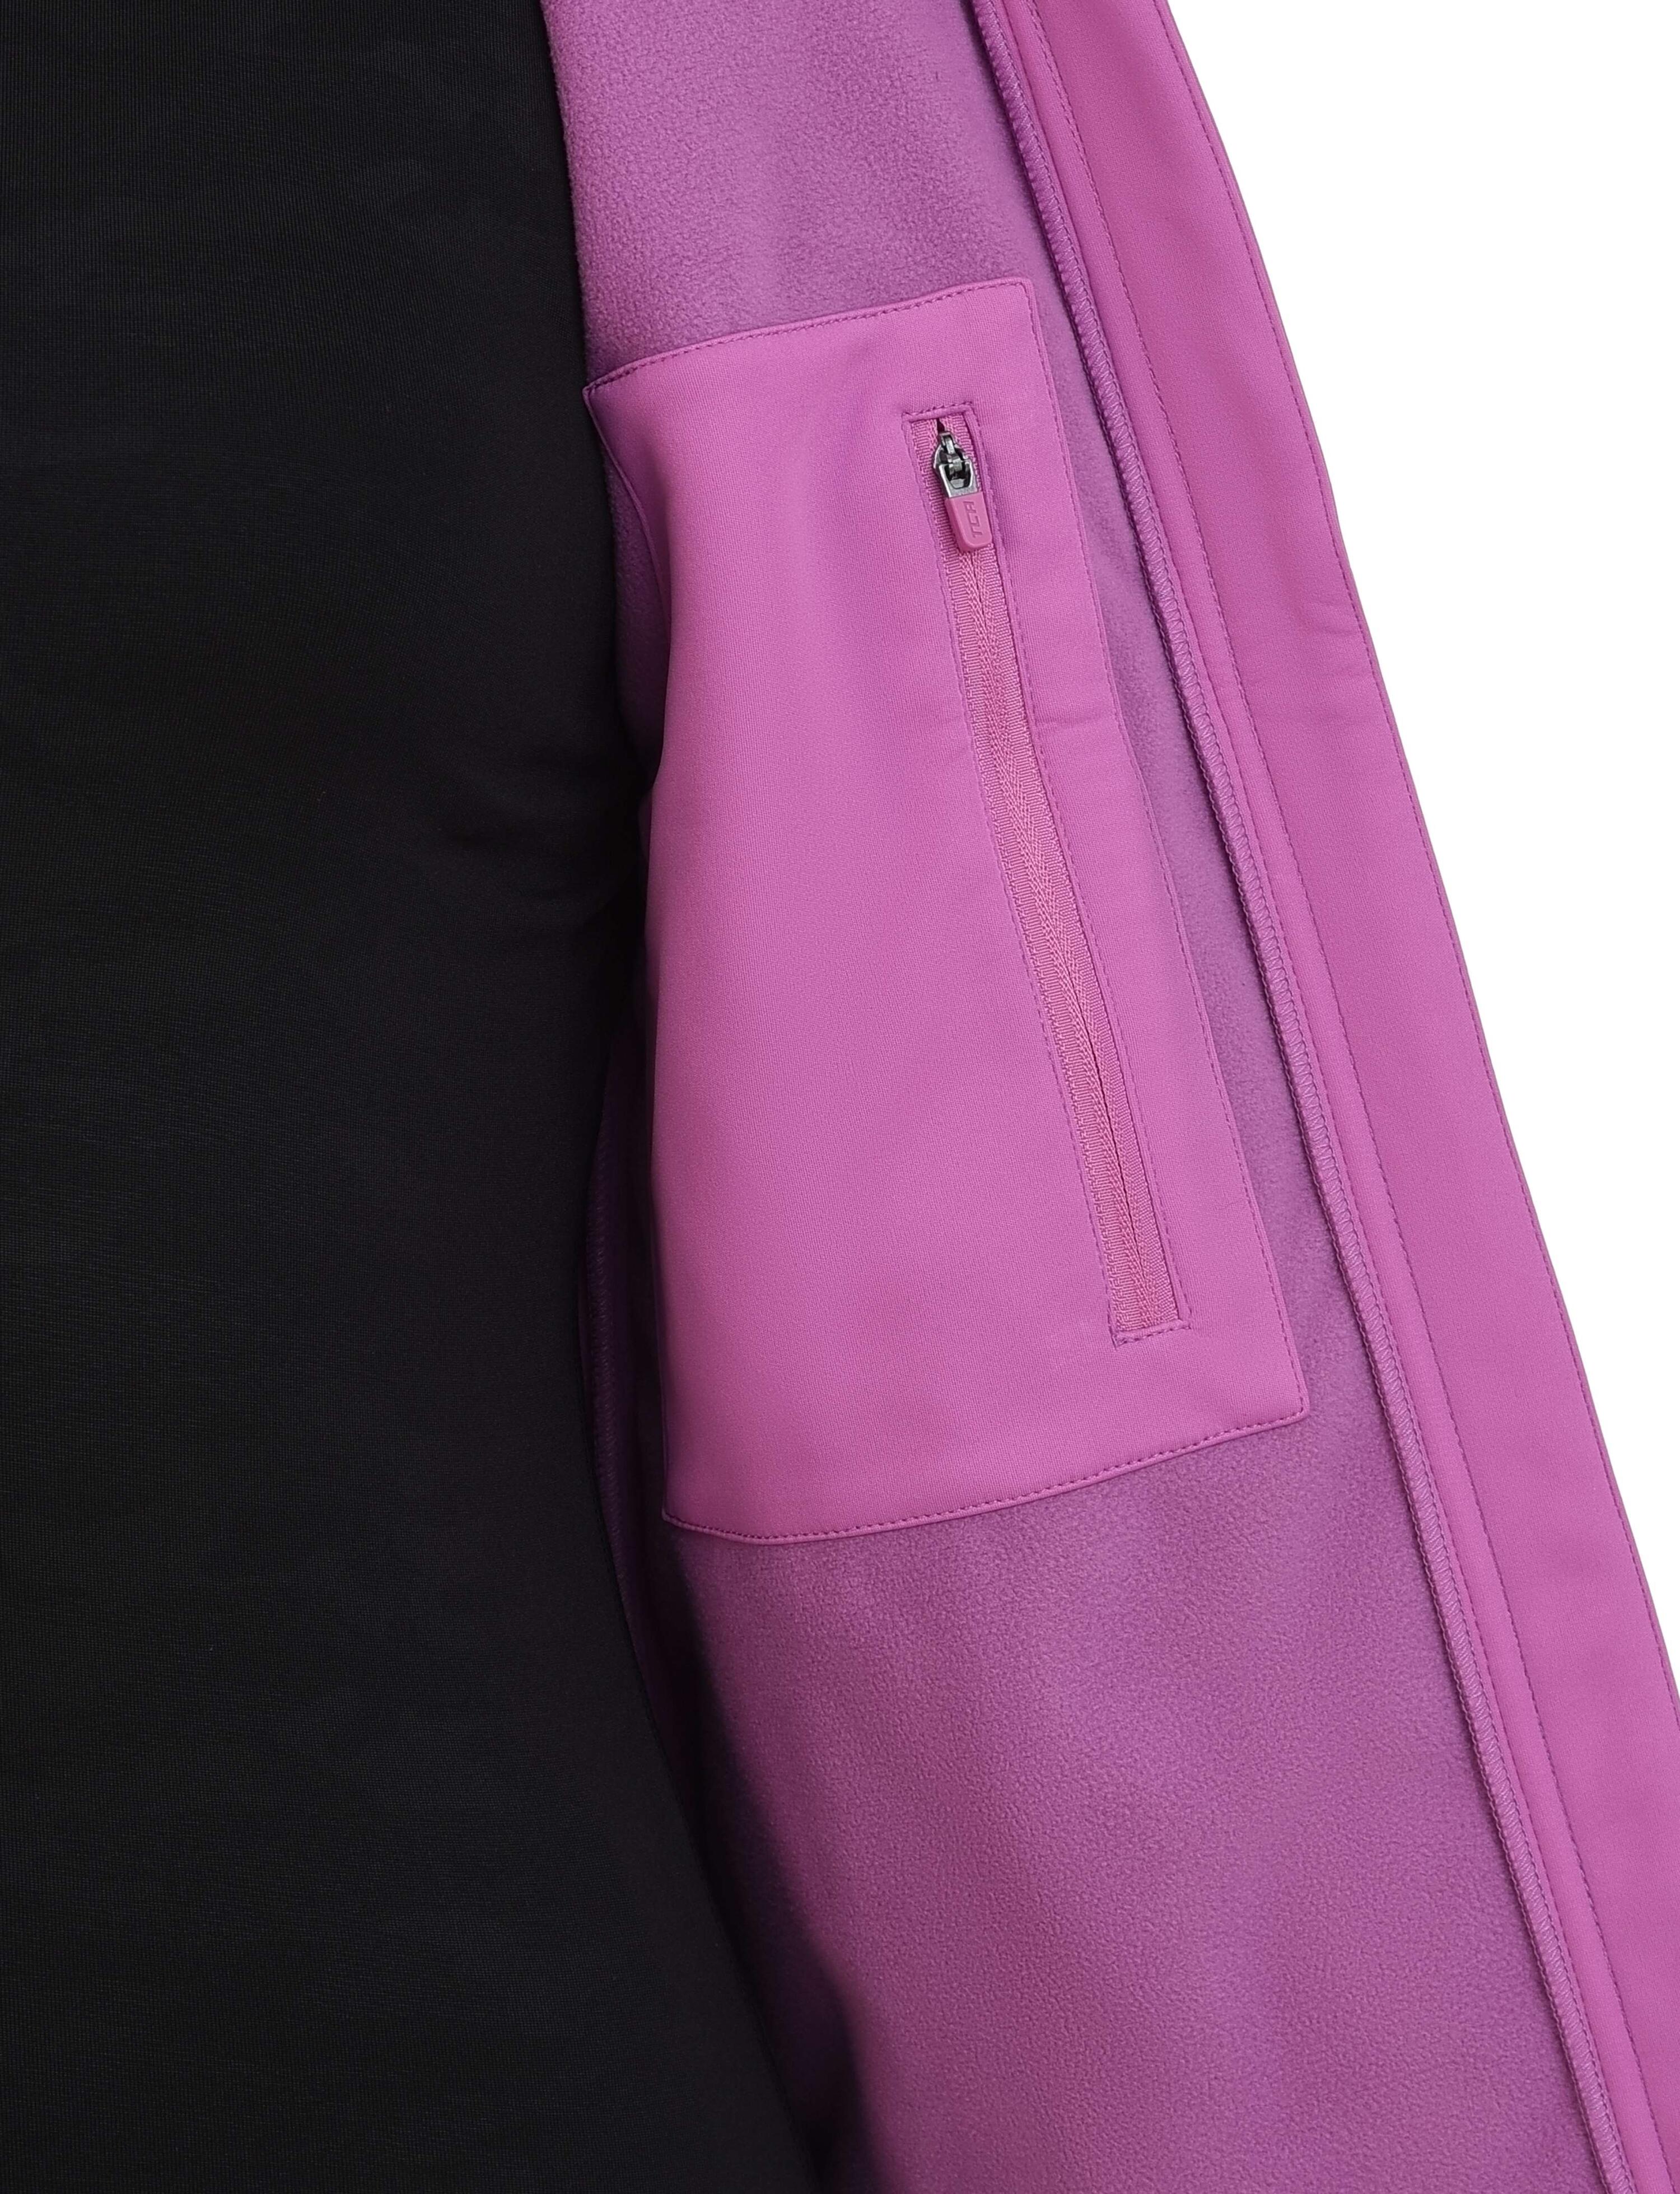 Women's Wind Proof Gilet with Zip Pockets - Spring Crocus (Pink) 4/4